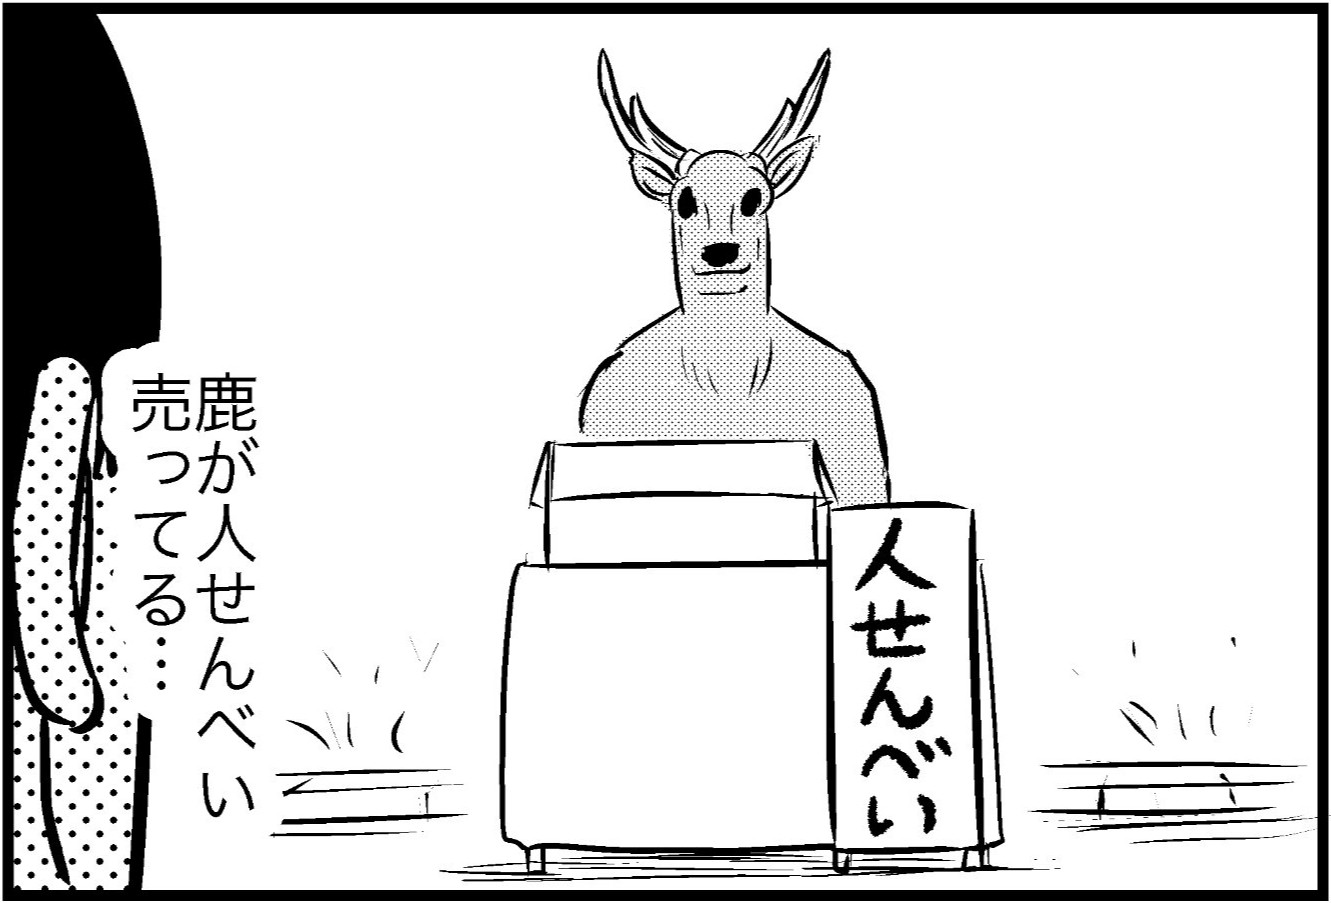 【ホラー】鹿と人が逆転した奈良で襲いくる "例" の洗礼…「奈良こわい」「センスを感じる」「ジワジワくる」